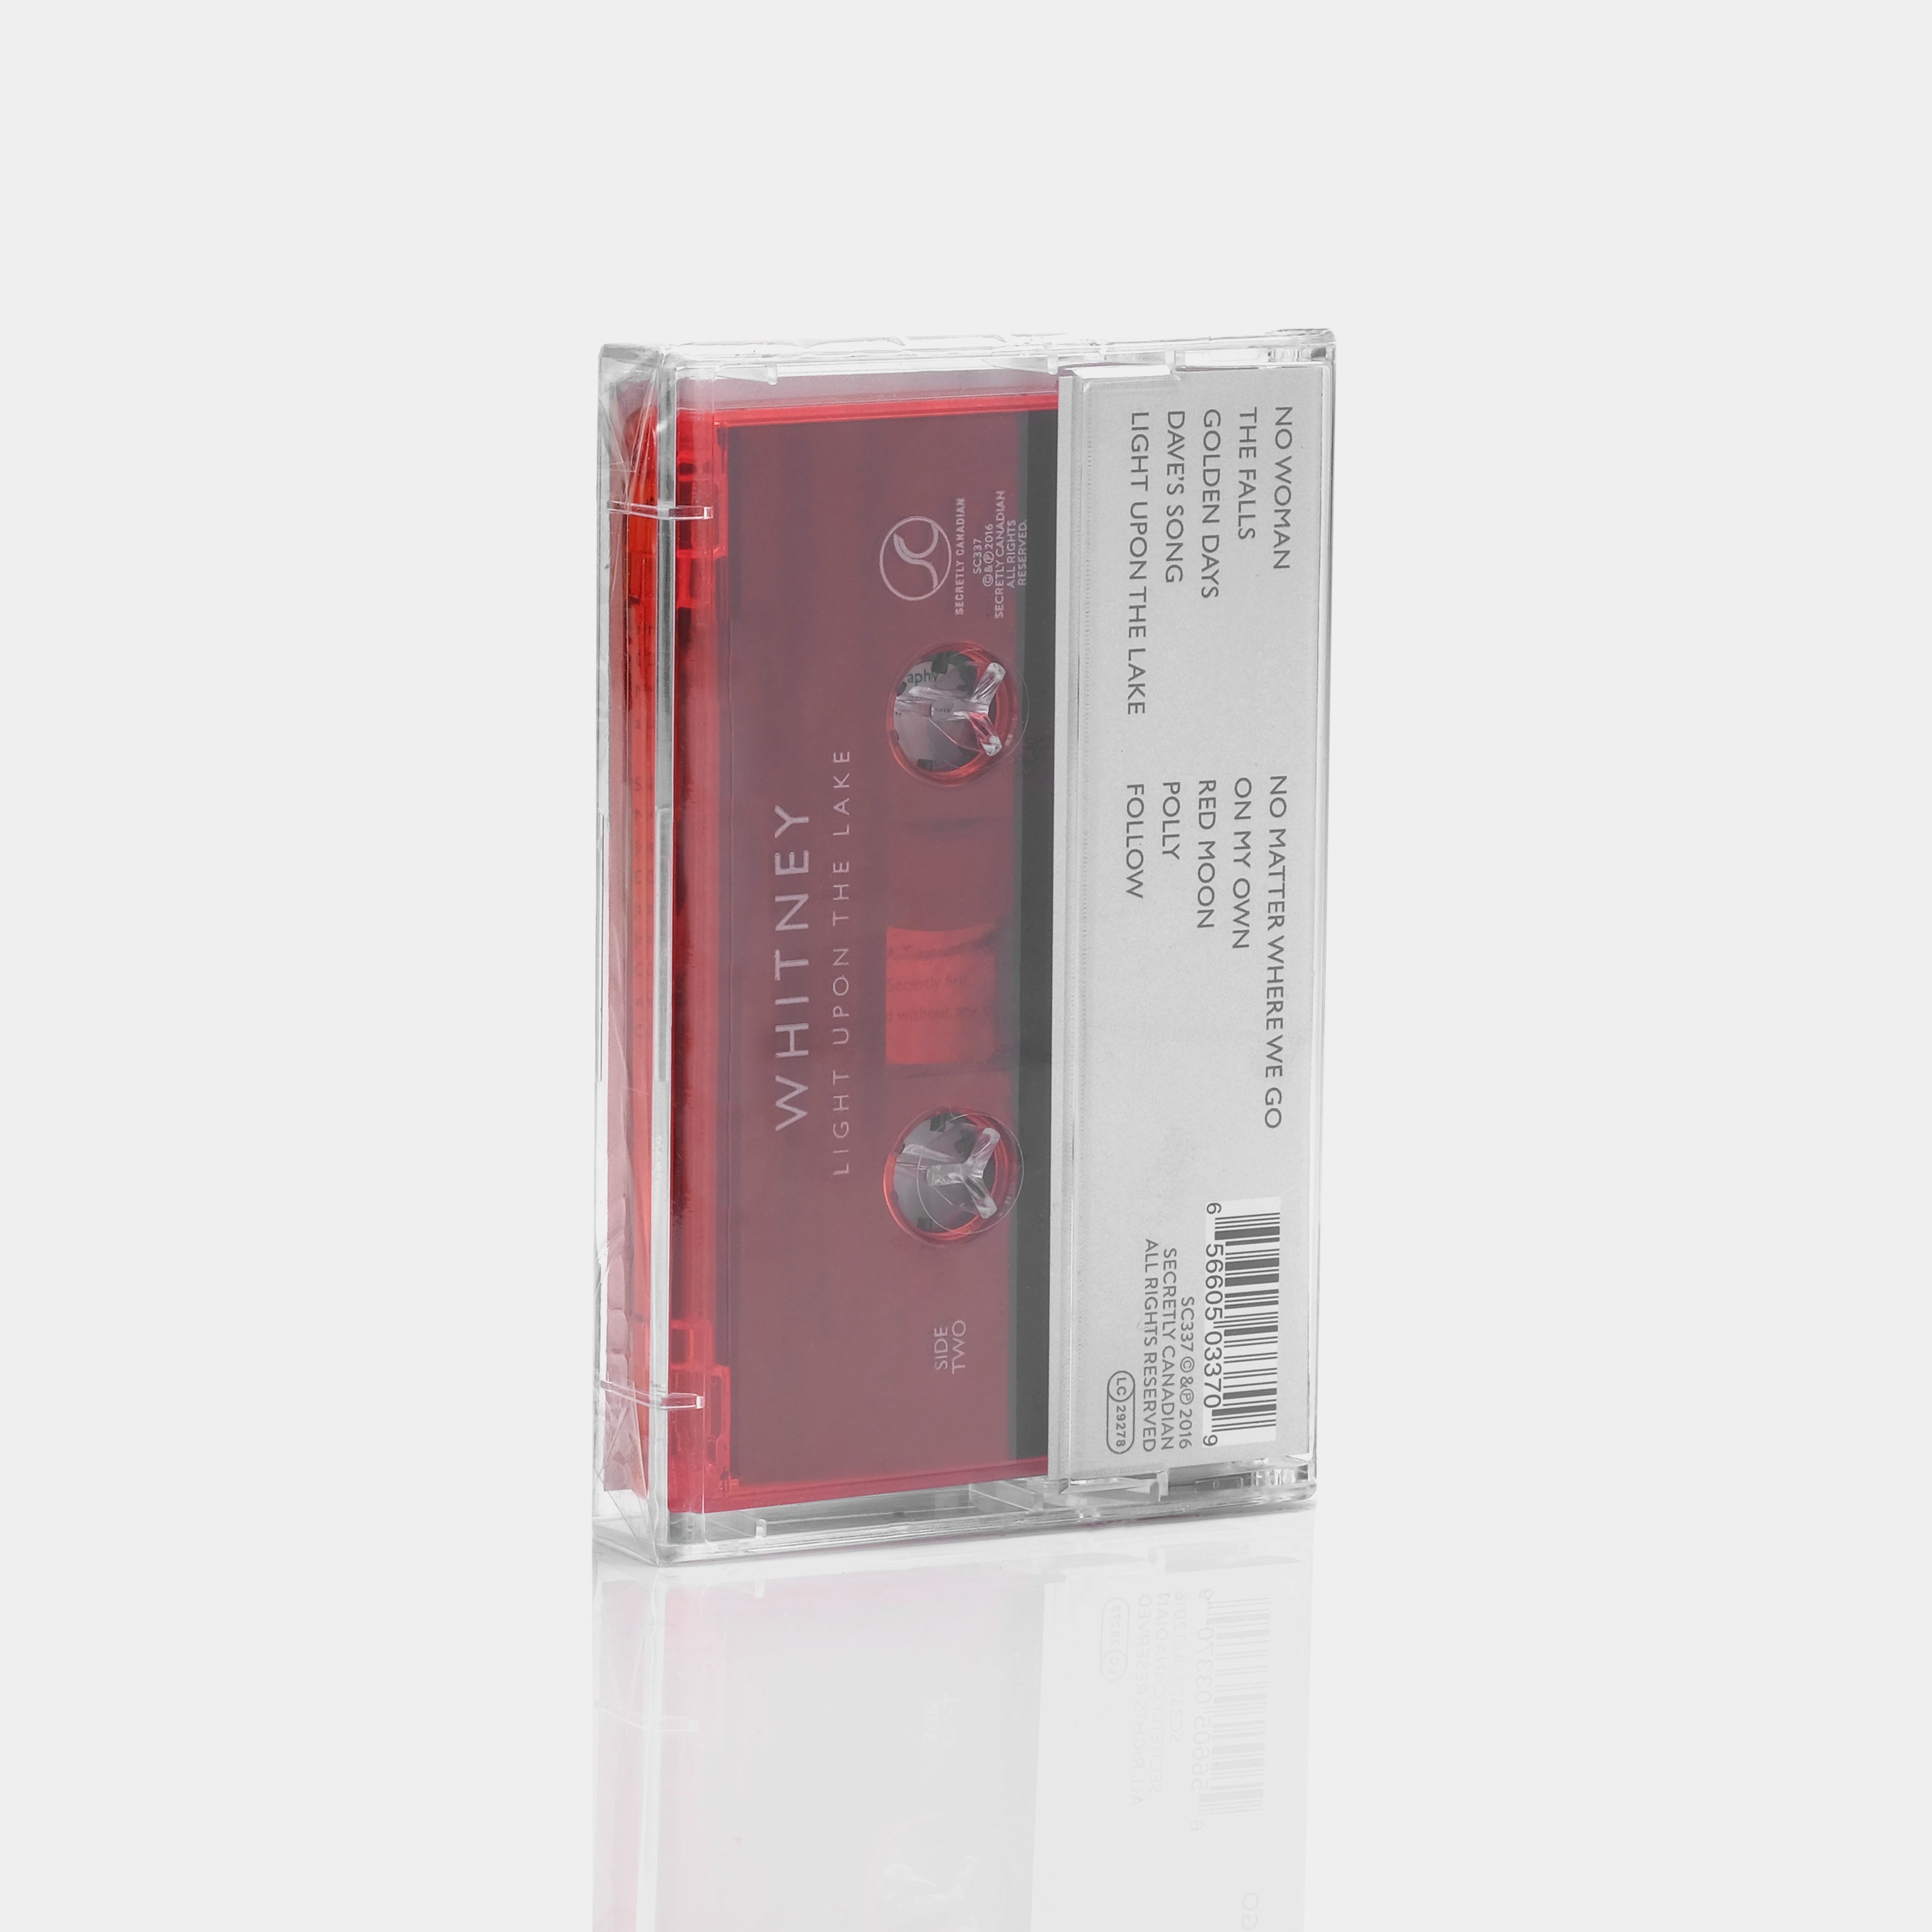 Whitney - Light Upon The Lake Cassette Tape